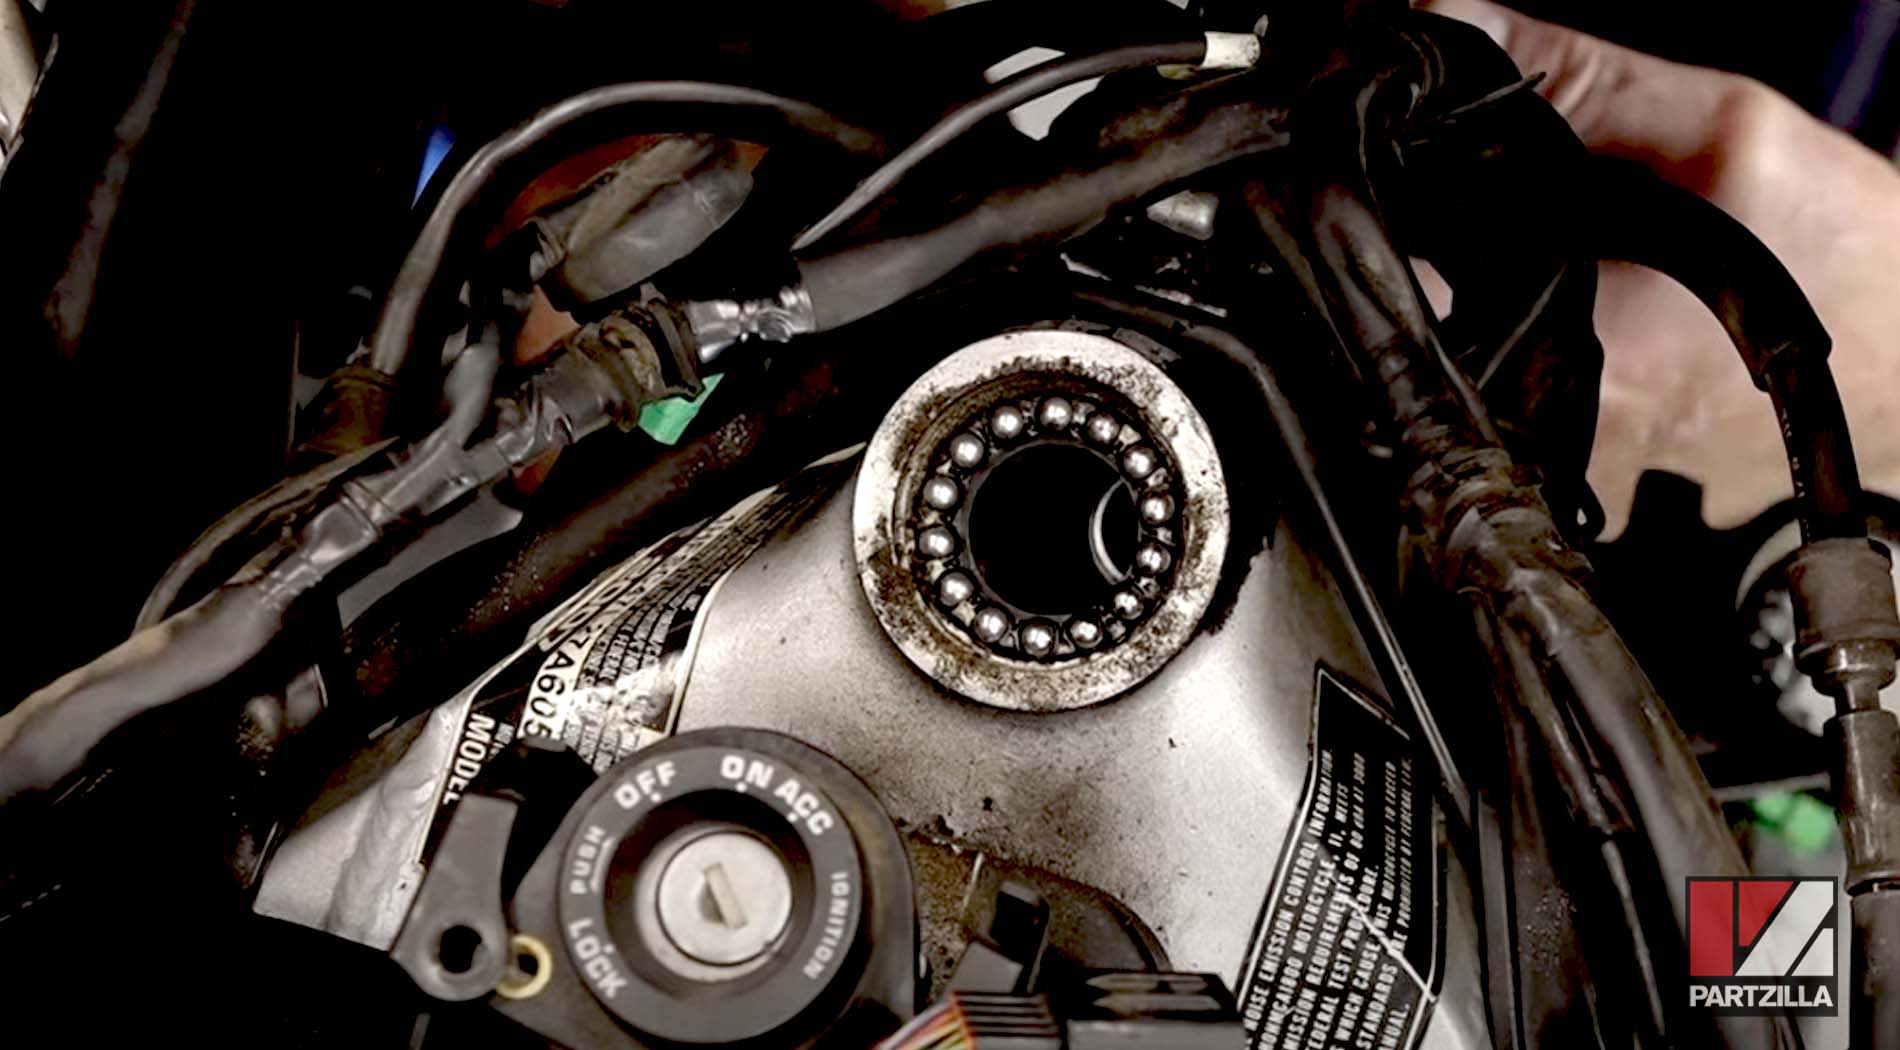 Honda Goldwing motorcycle steering bearing change